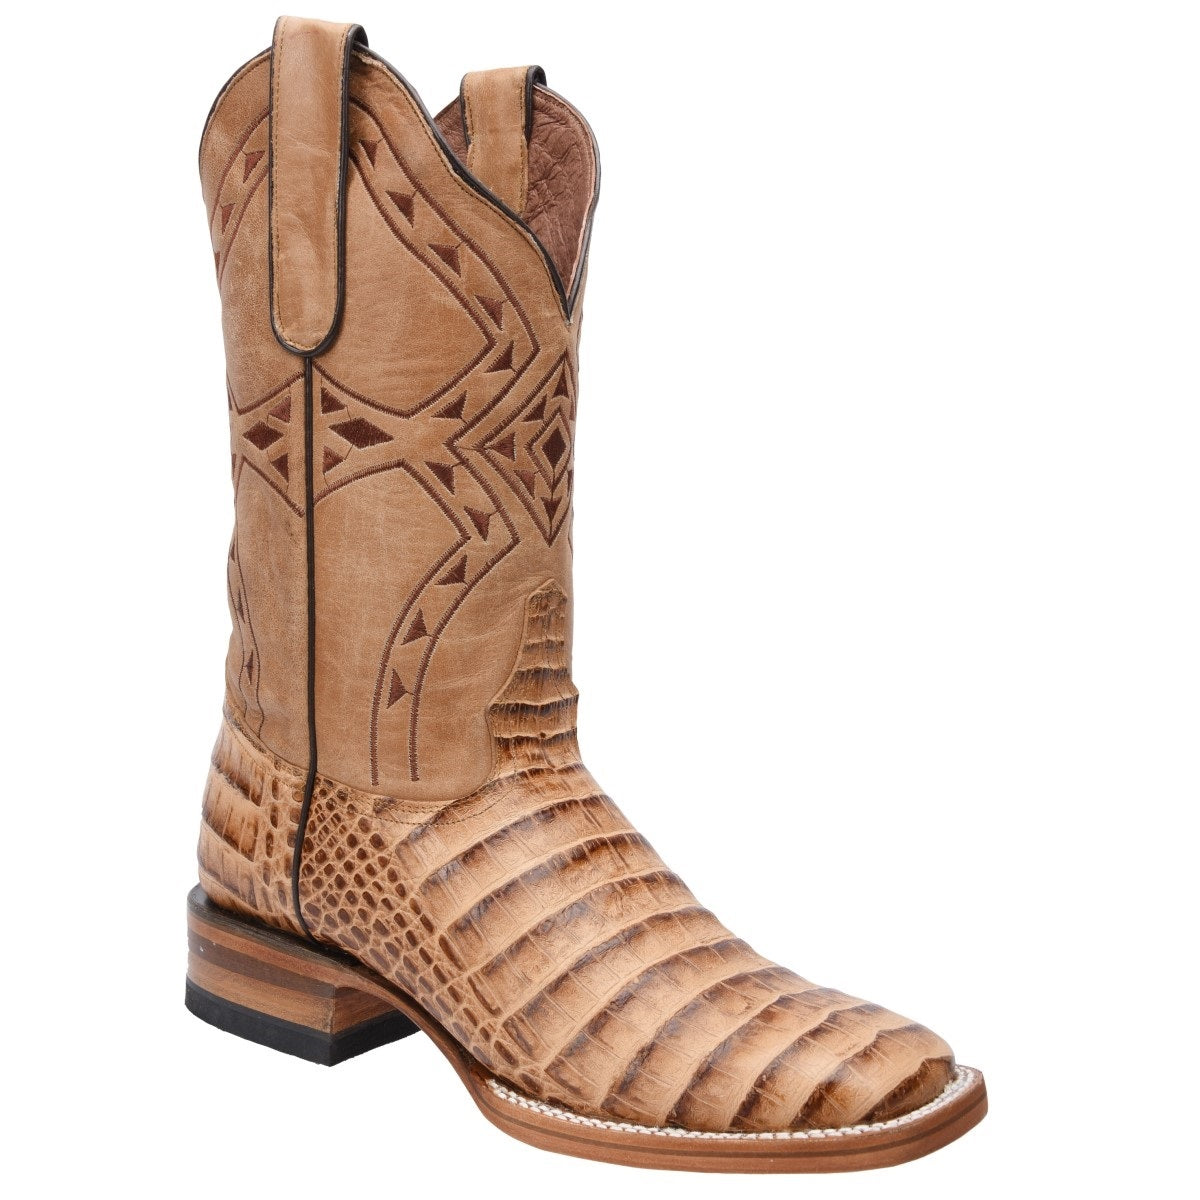 Botas Vaqueras TM-WD0358 - Western Boots